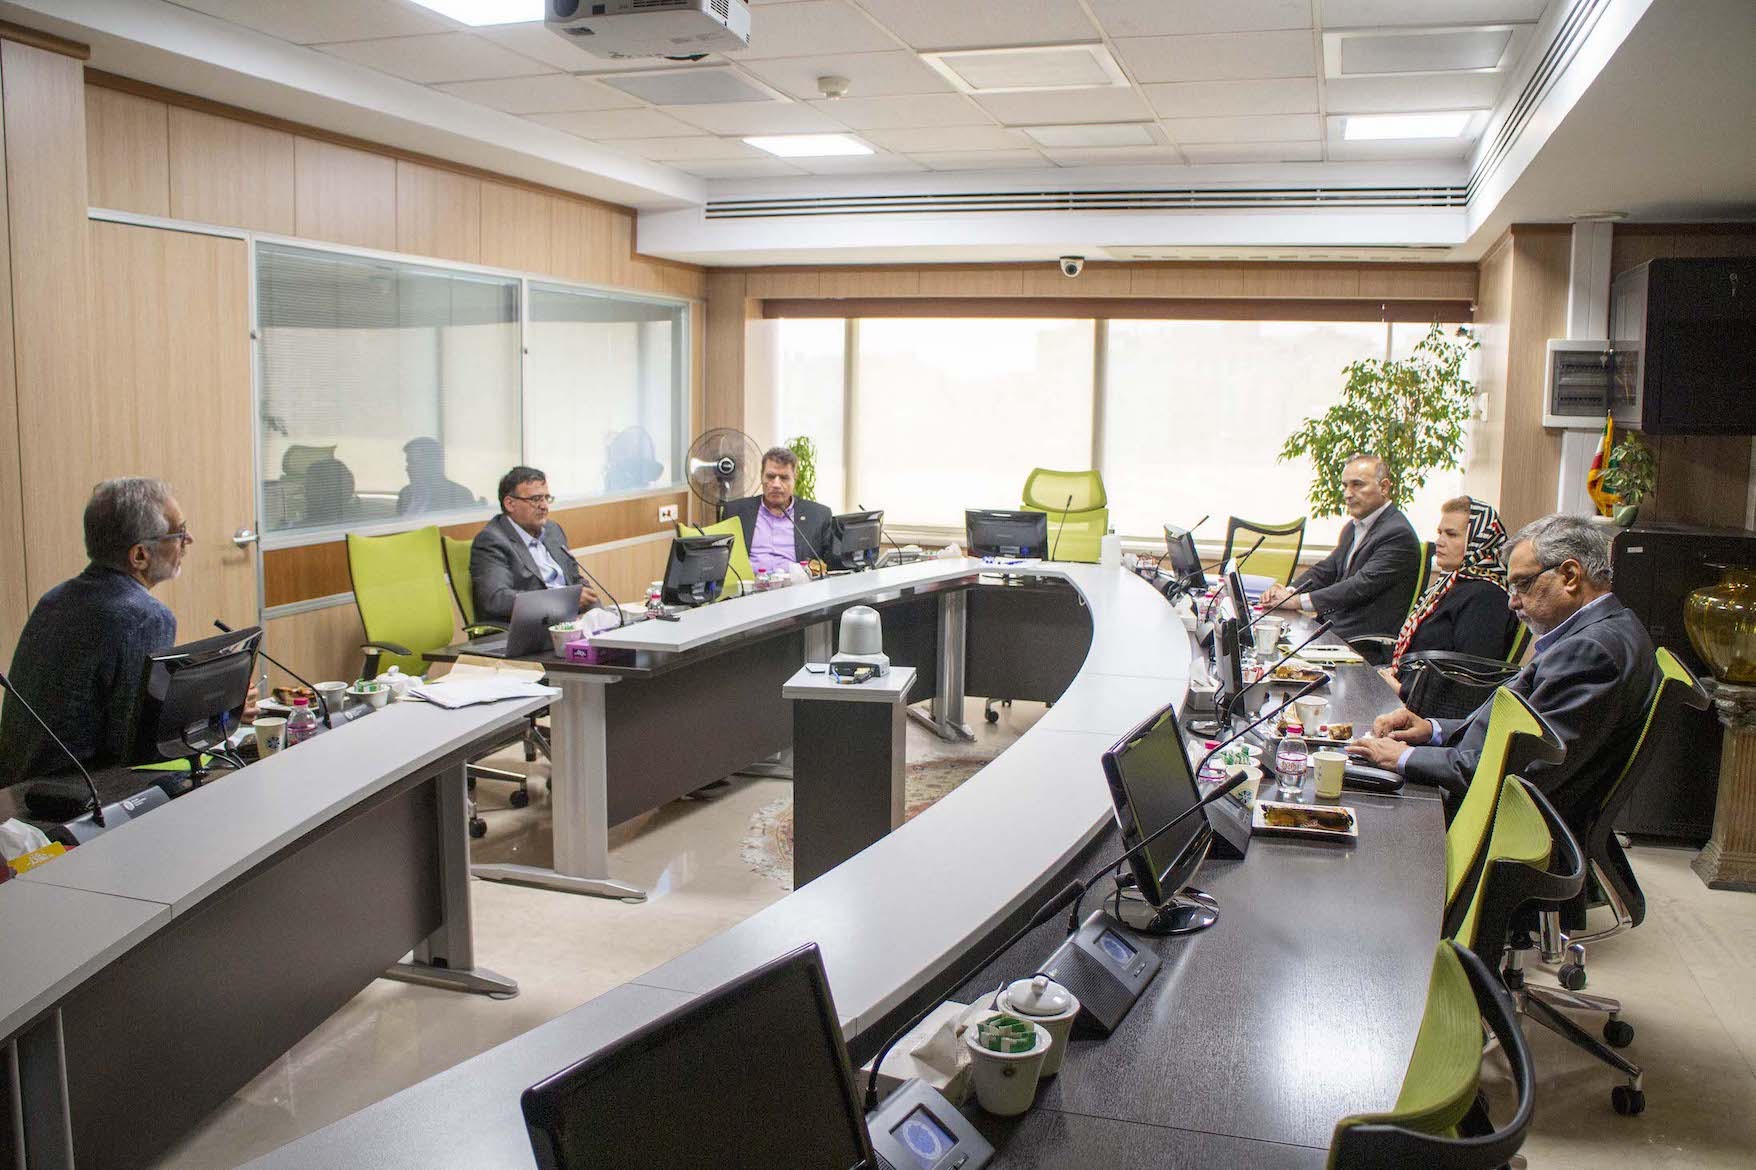 راهبردهای همکاری کانون با اتاق بازرگانی در جلسه هیأت مدیره کانون مورد بررسی قرار گرفت